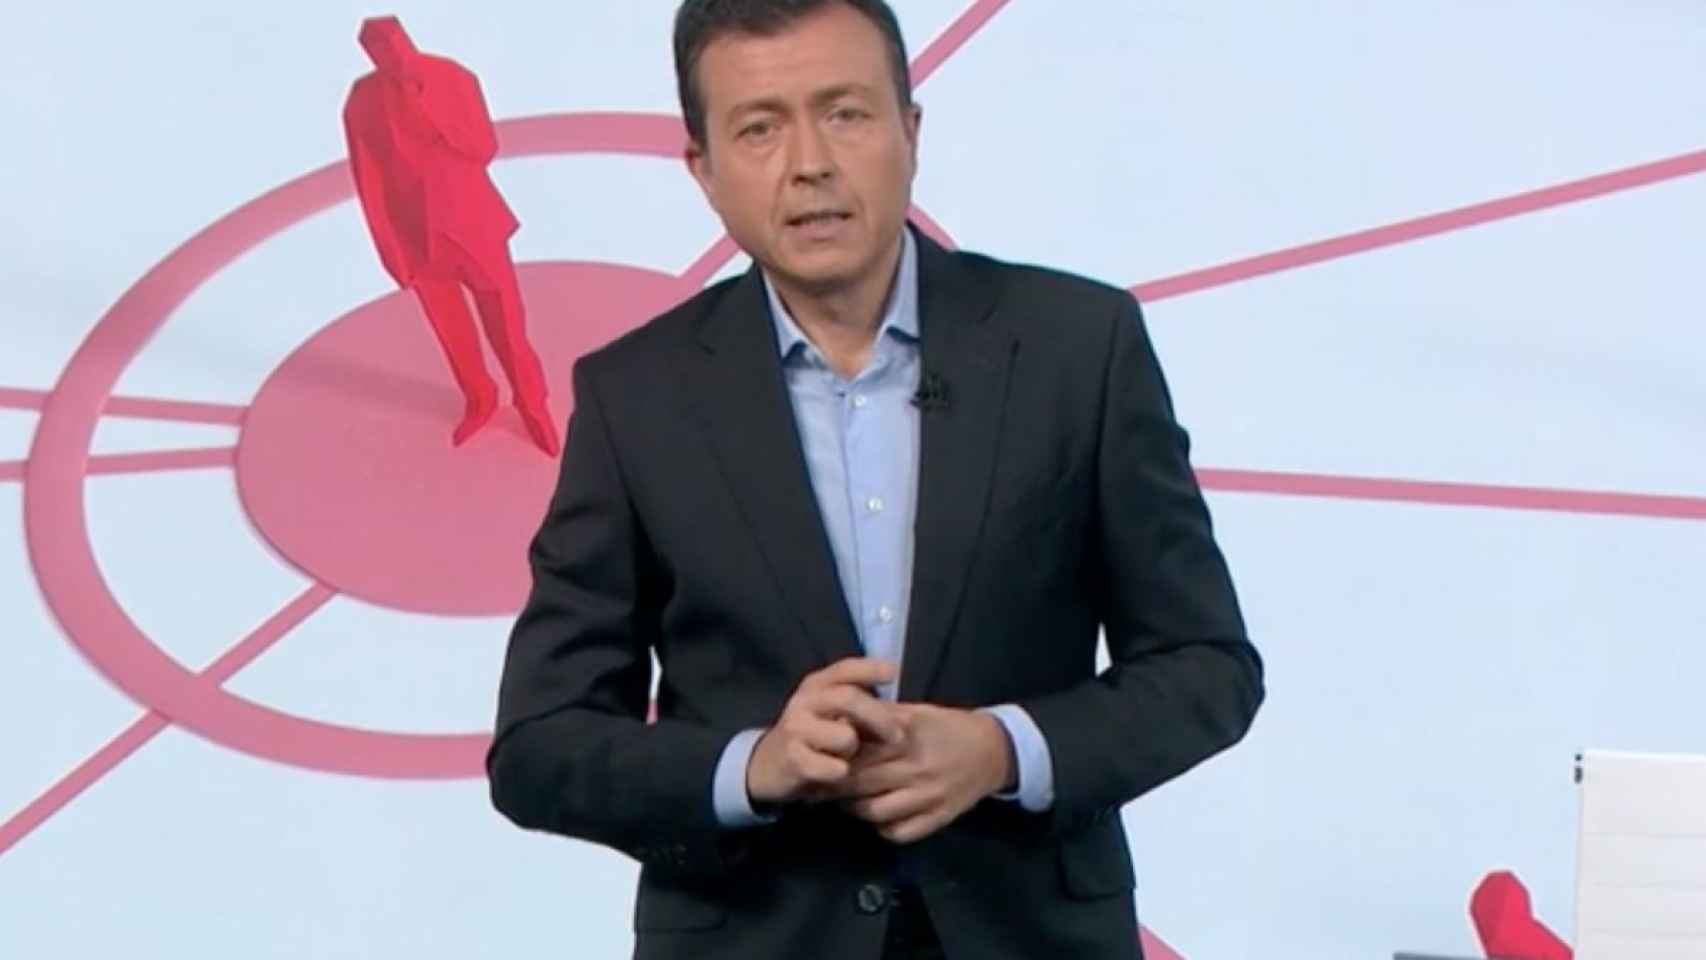 Manu Sánchez durante la intervención que se ha hecho viral.